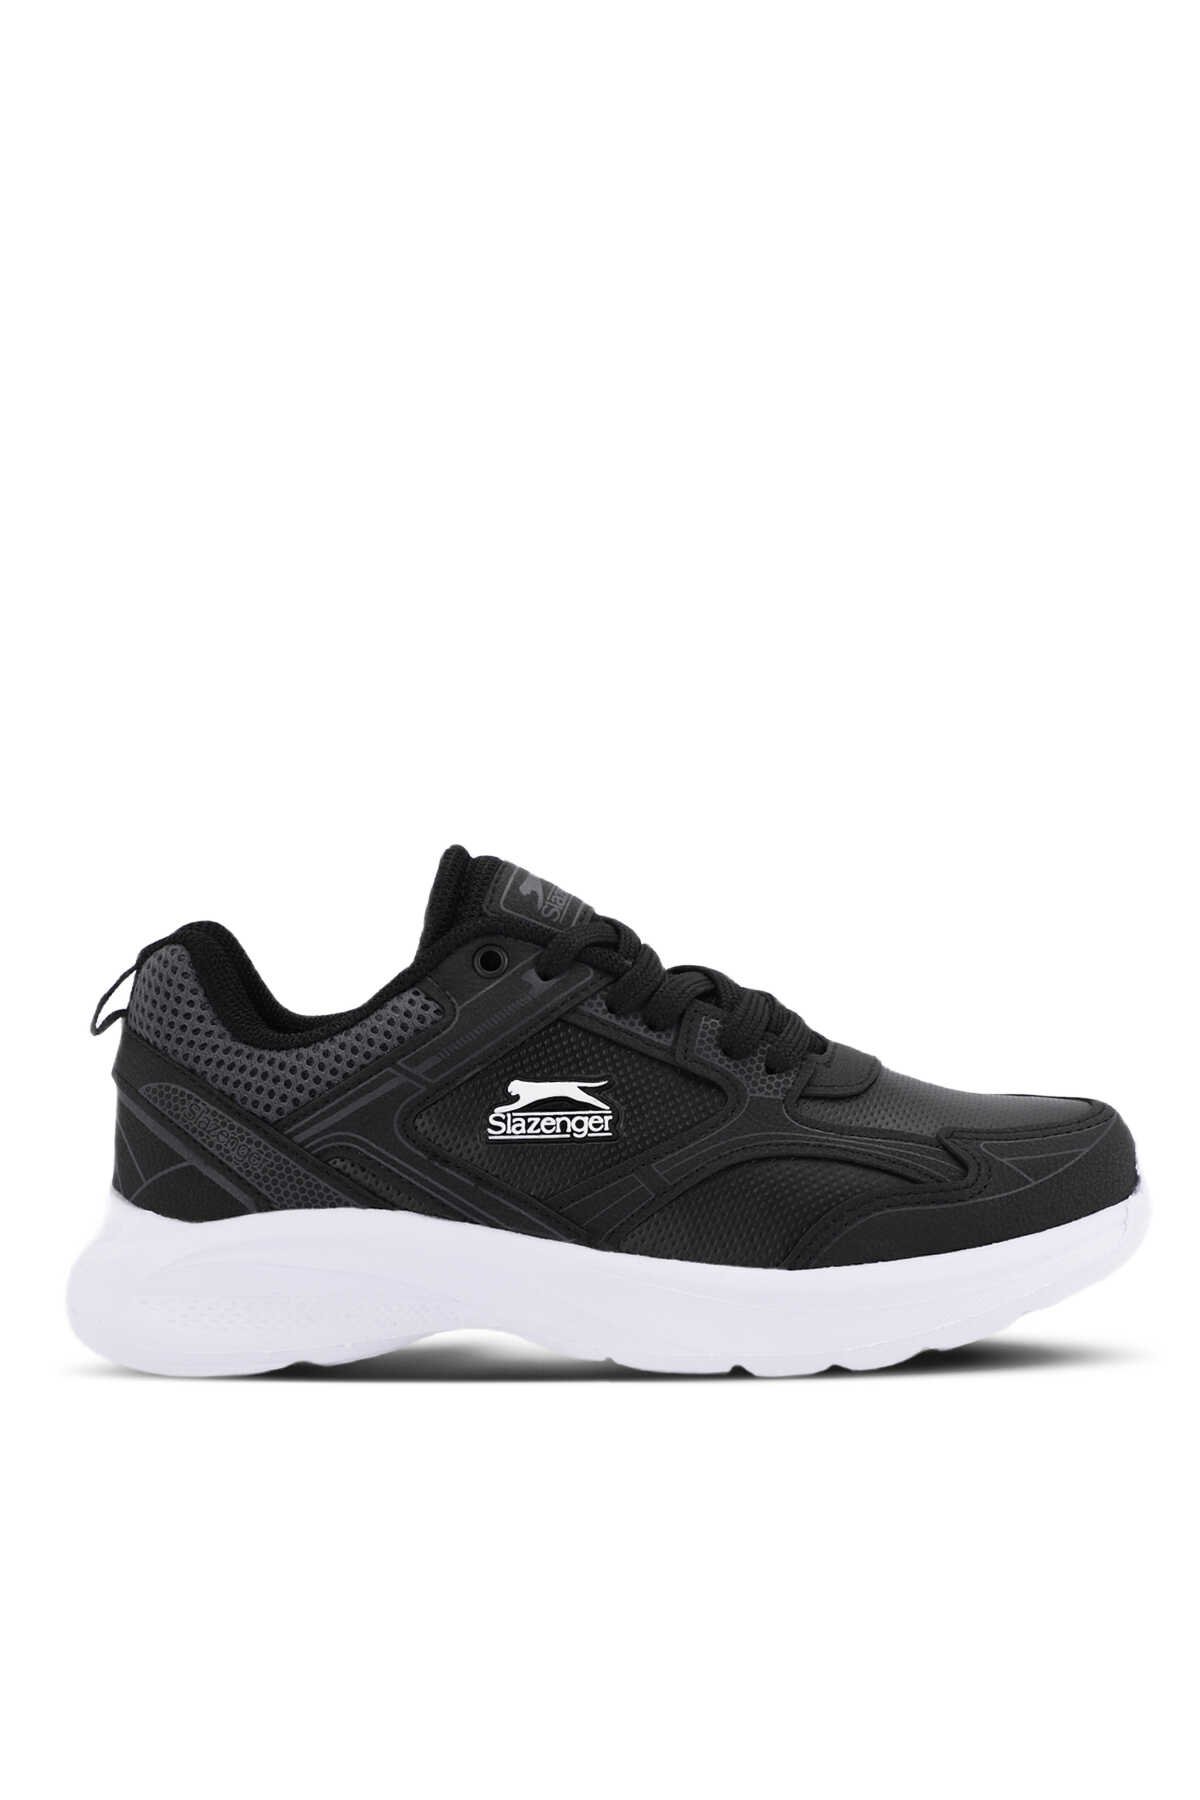 Slazenger - Slazenger GALA CLT Sneaker Kadın Ayakkabı Siyah / Beyaz